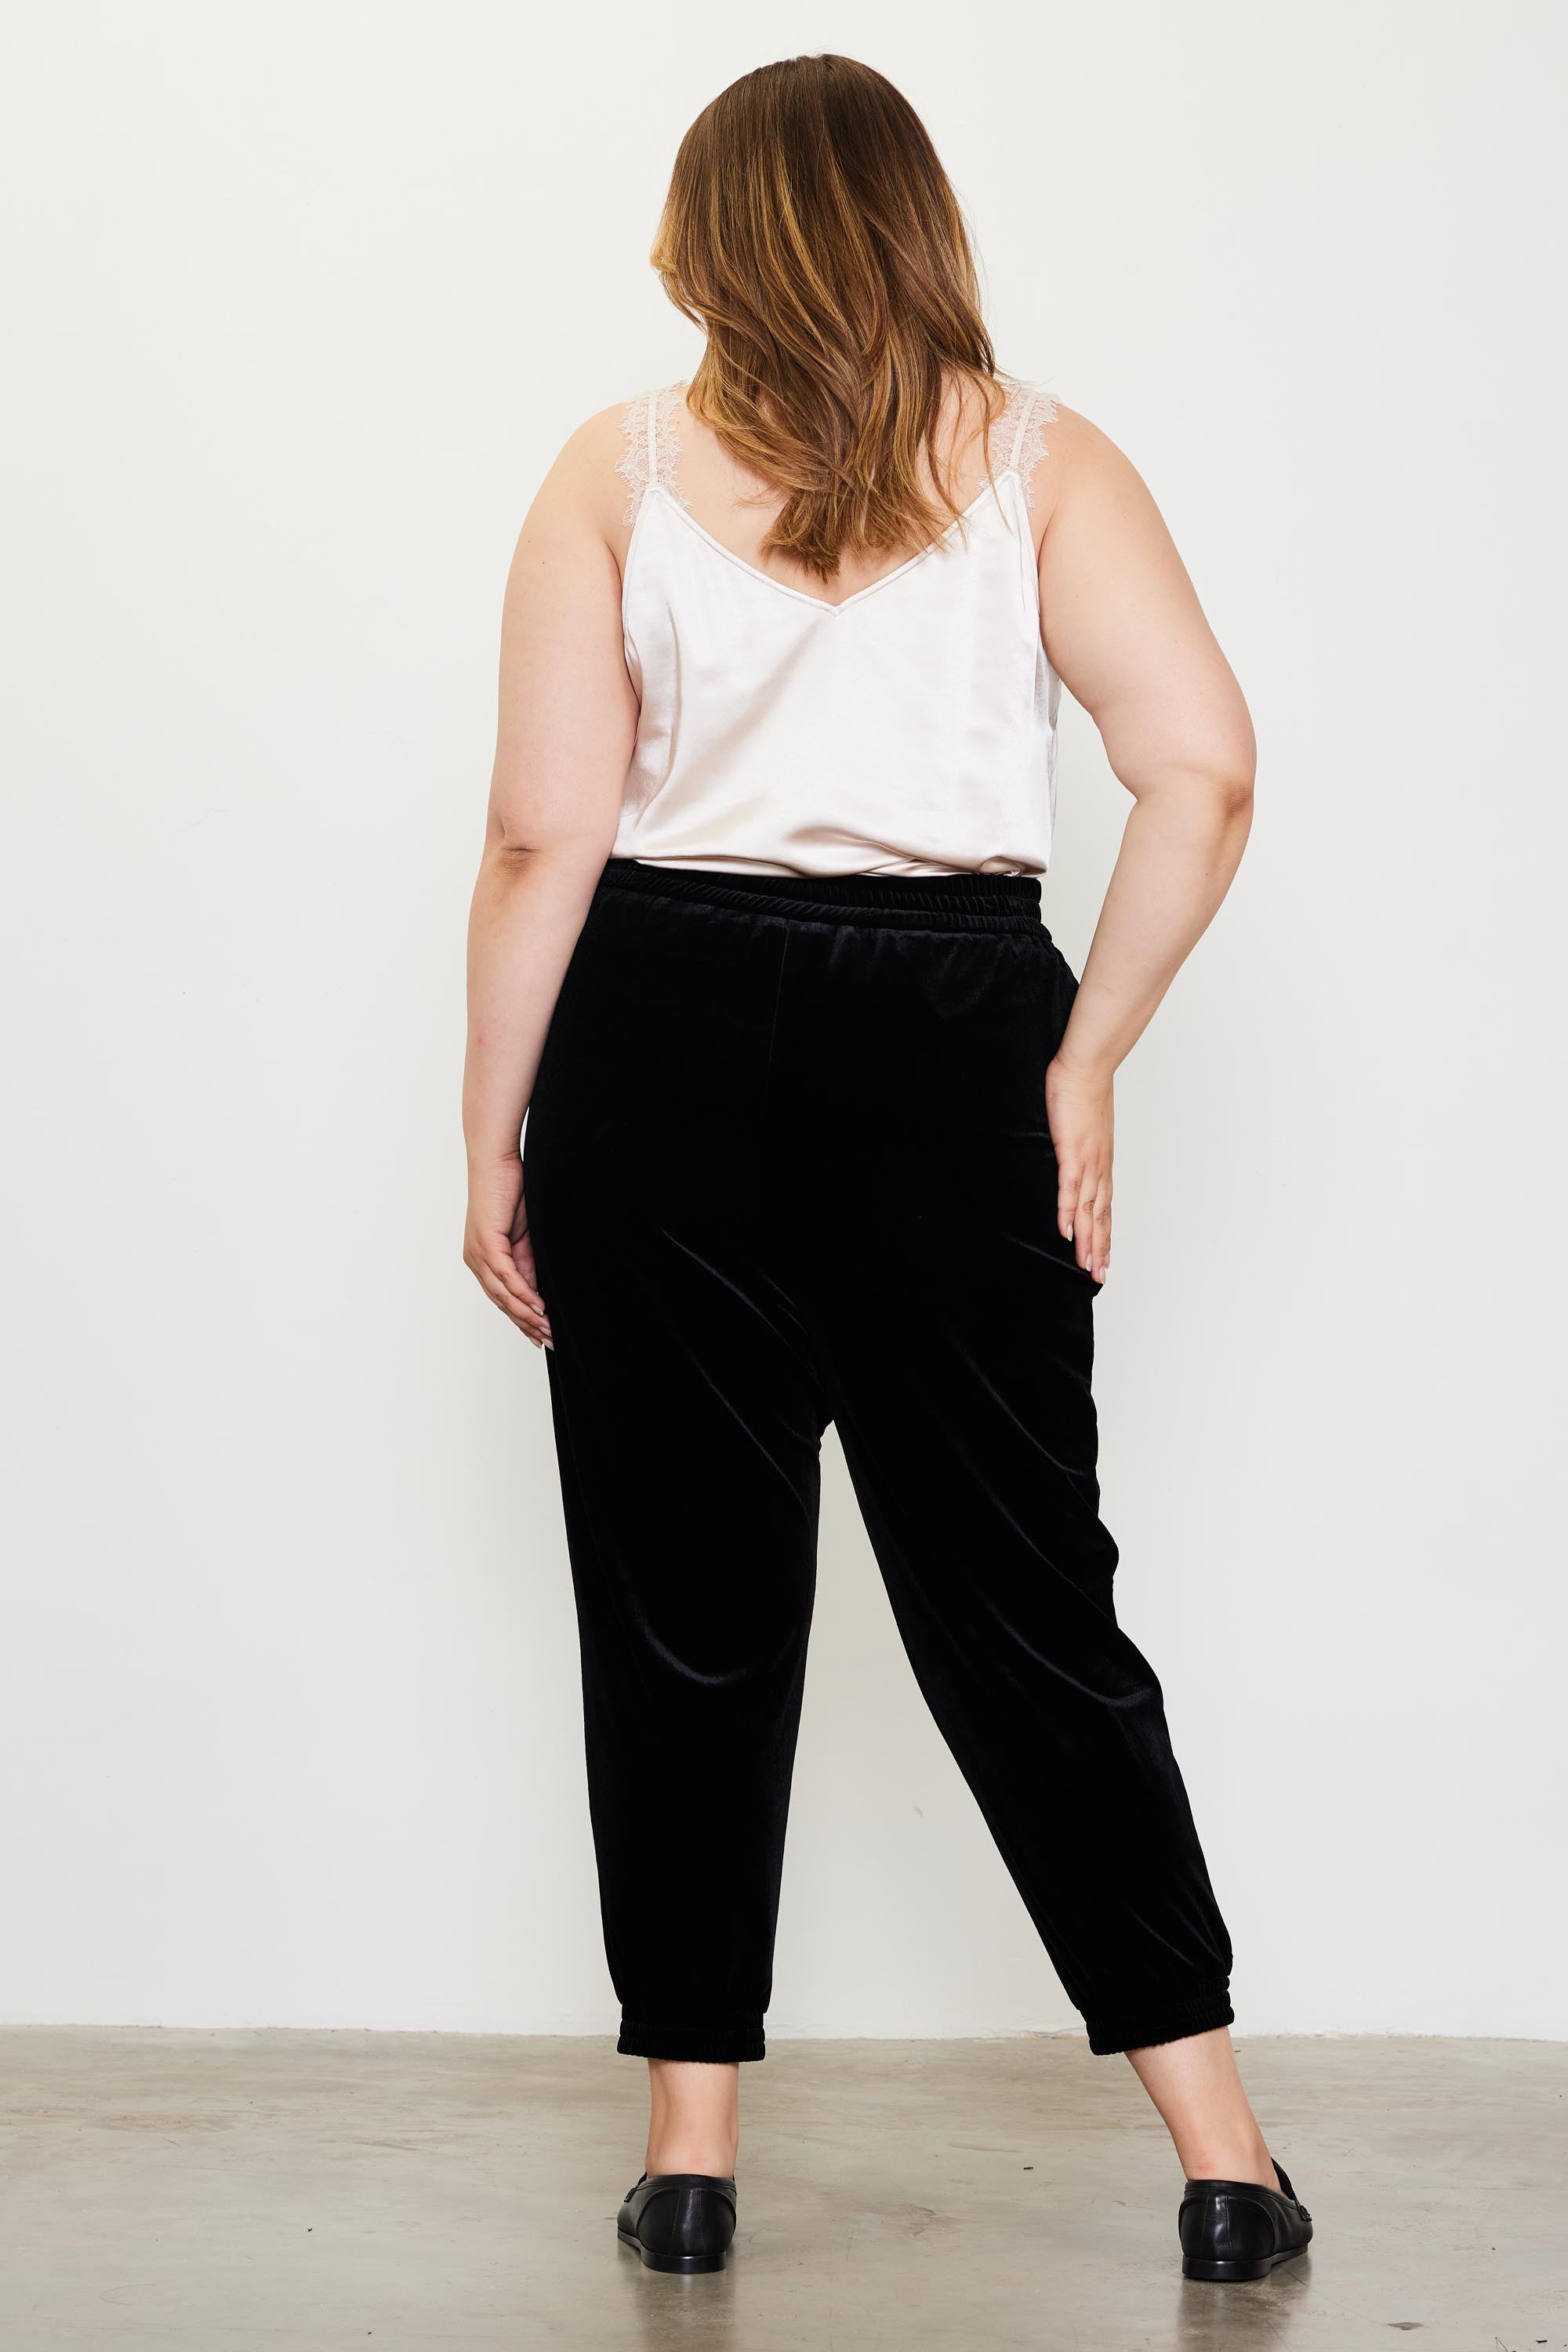 Velvet Jogger Pants (Plus Size - Black) – In Pursuit Mobile